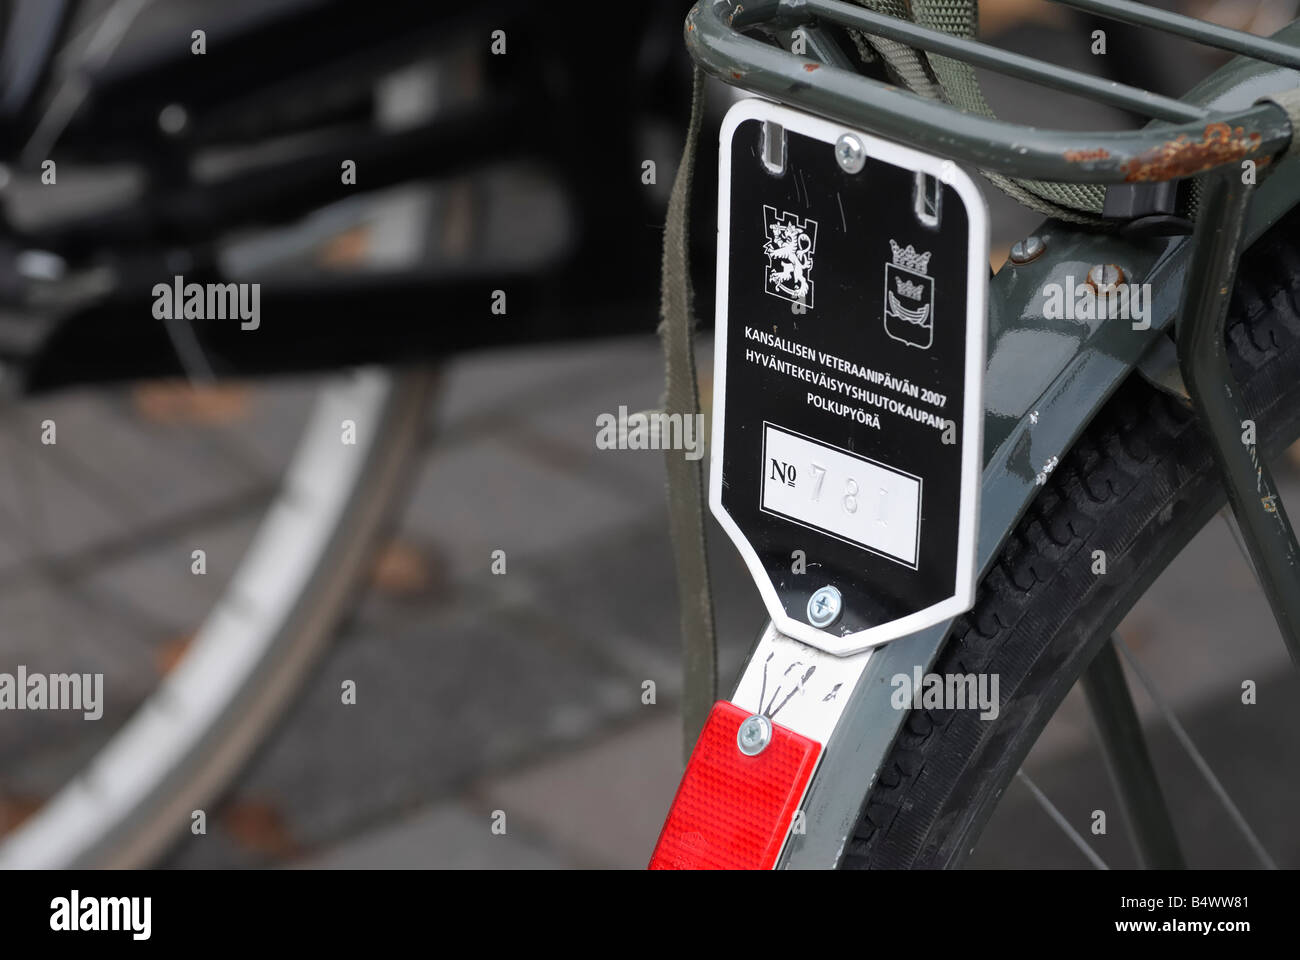 Ein Fahrrad Nummernschild Helsinki Finnland Stockfotografie Alamy